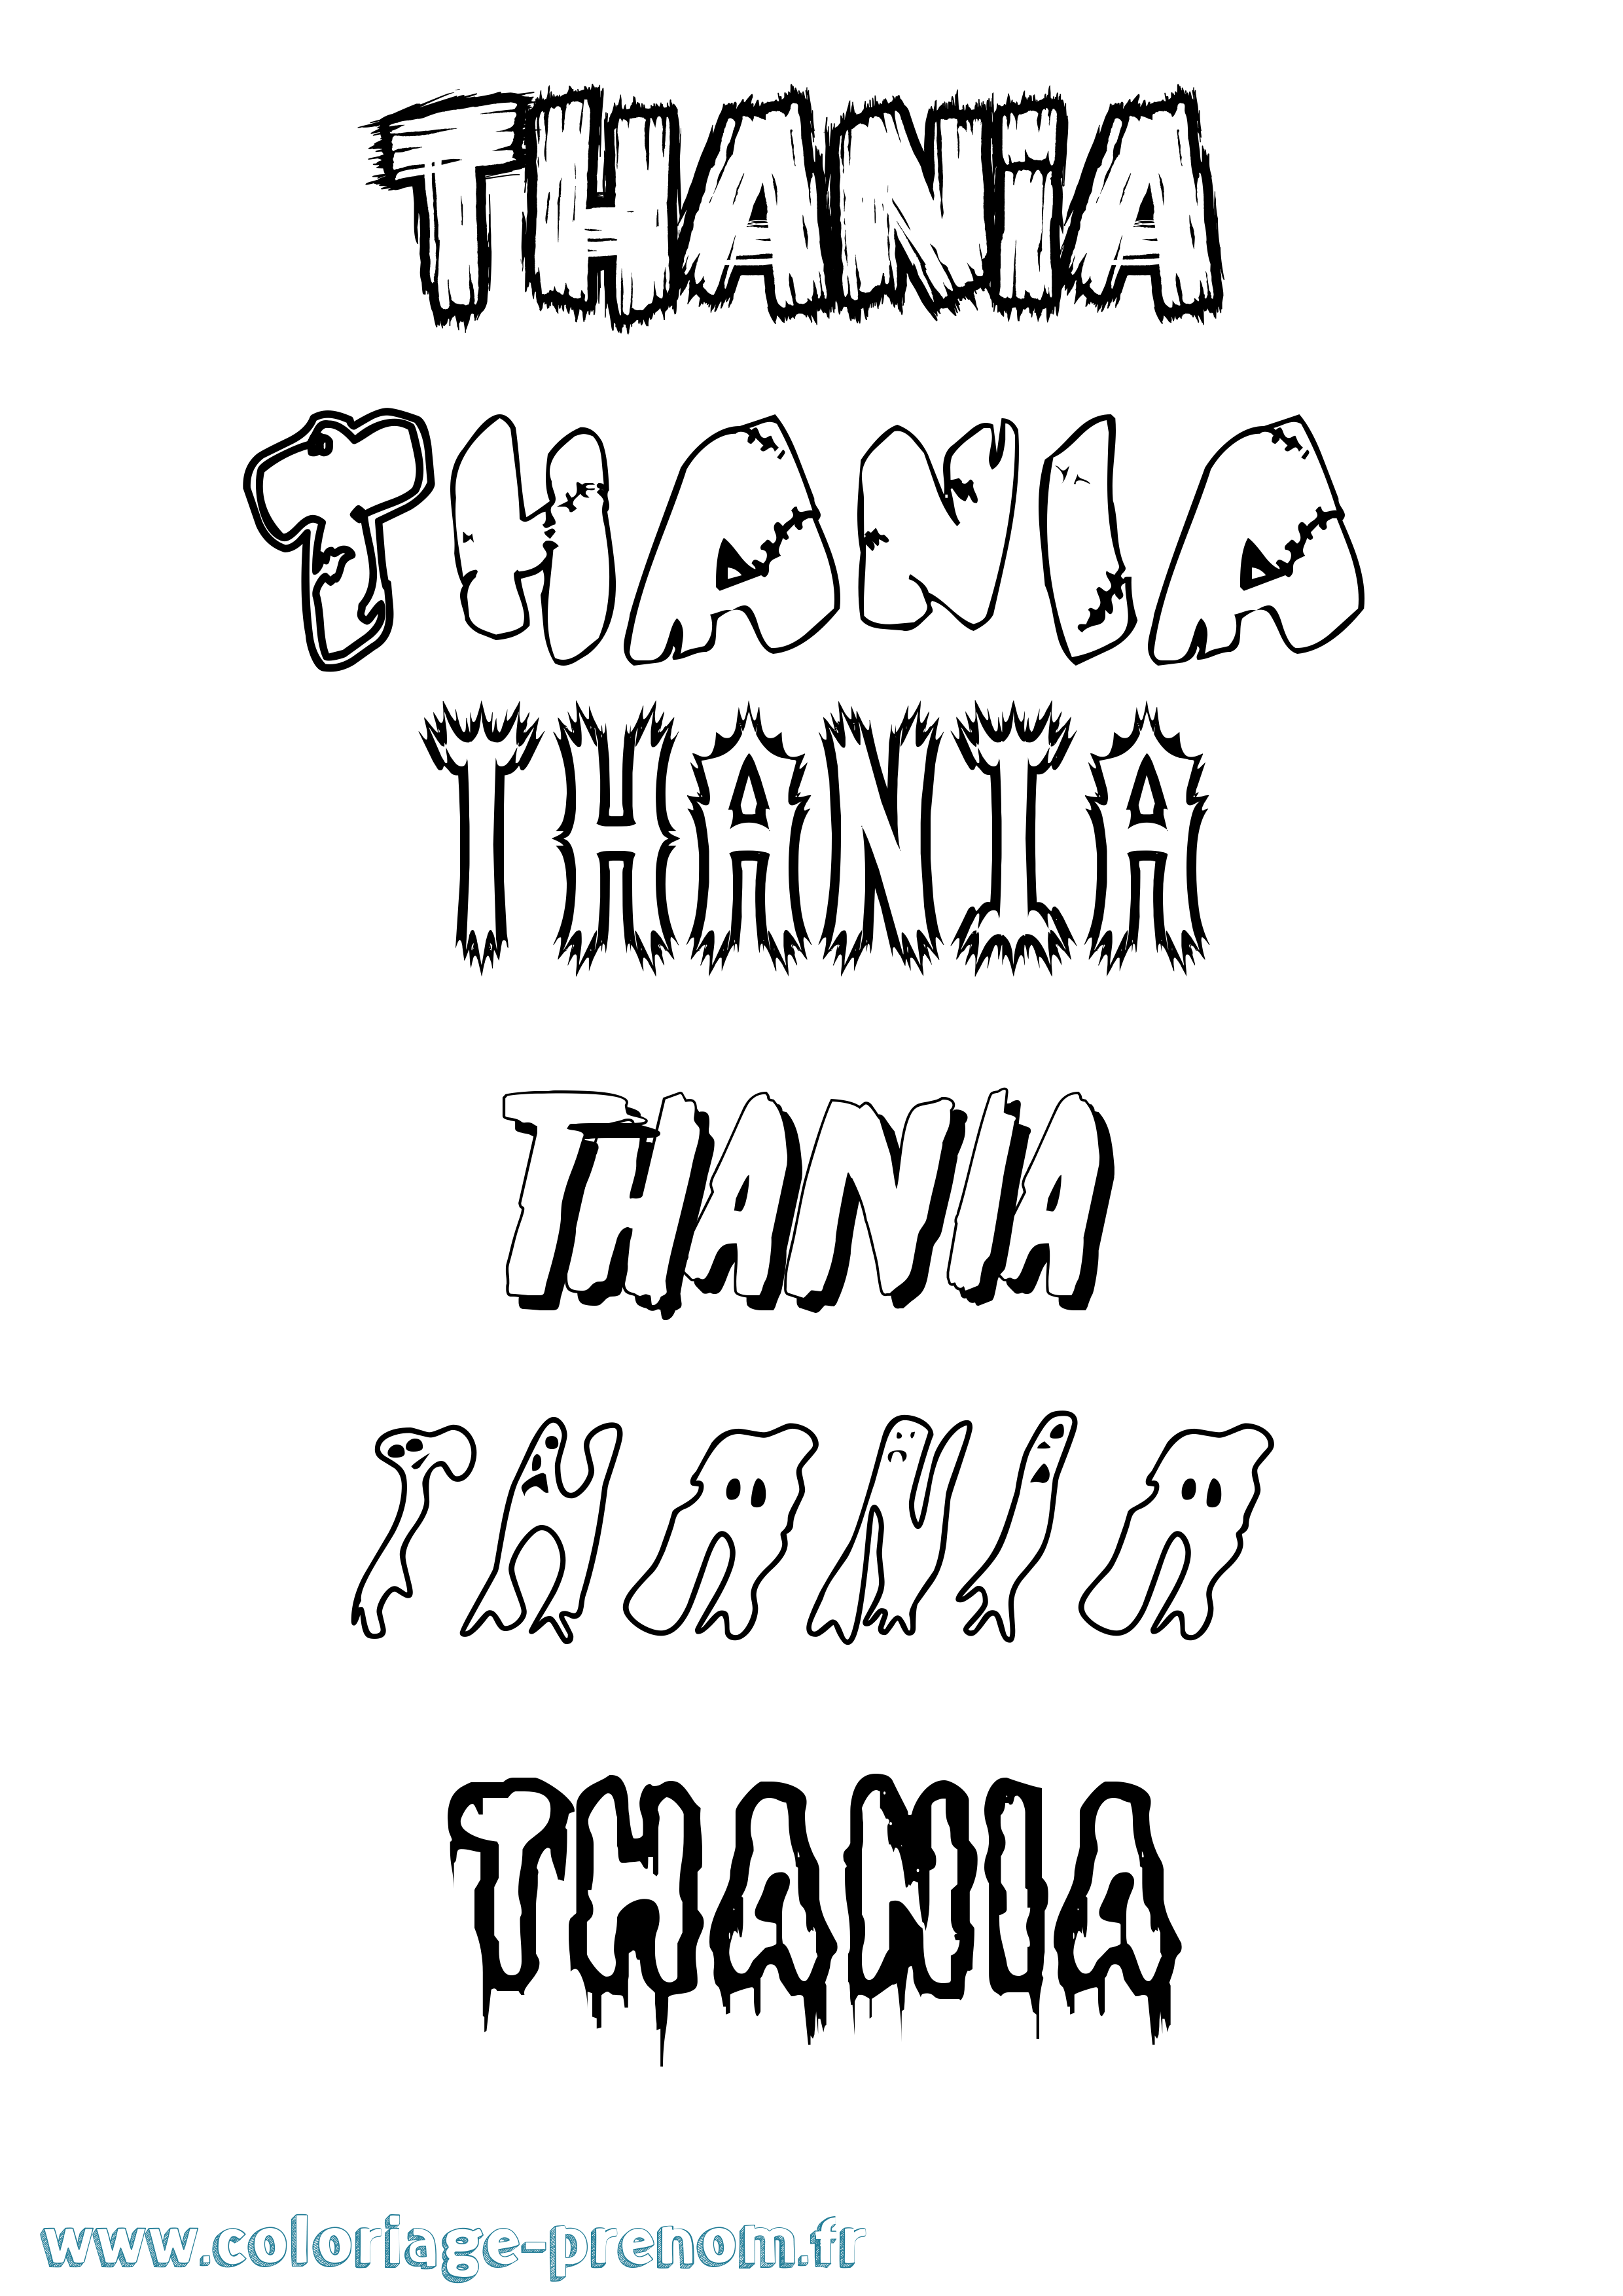 Coloriage prénom Thania Frisson